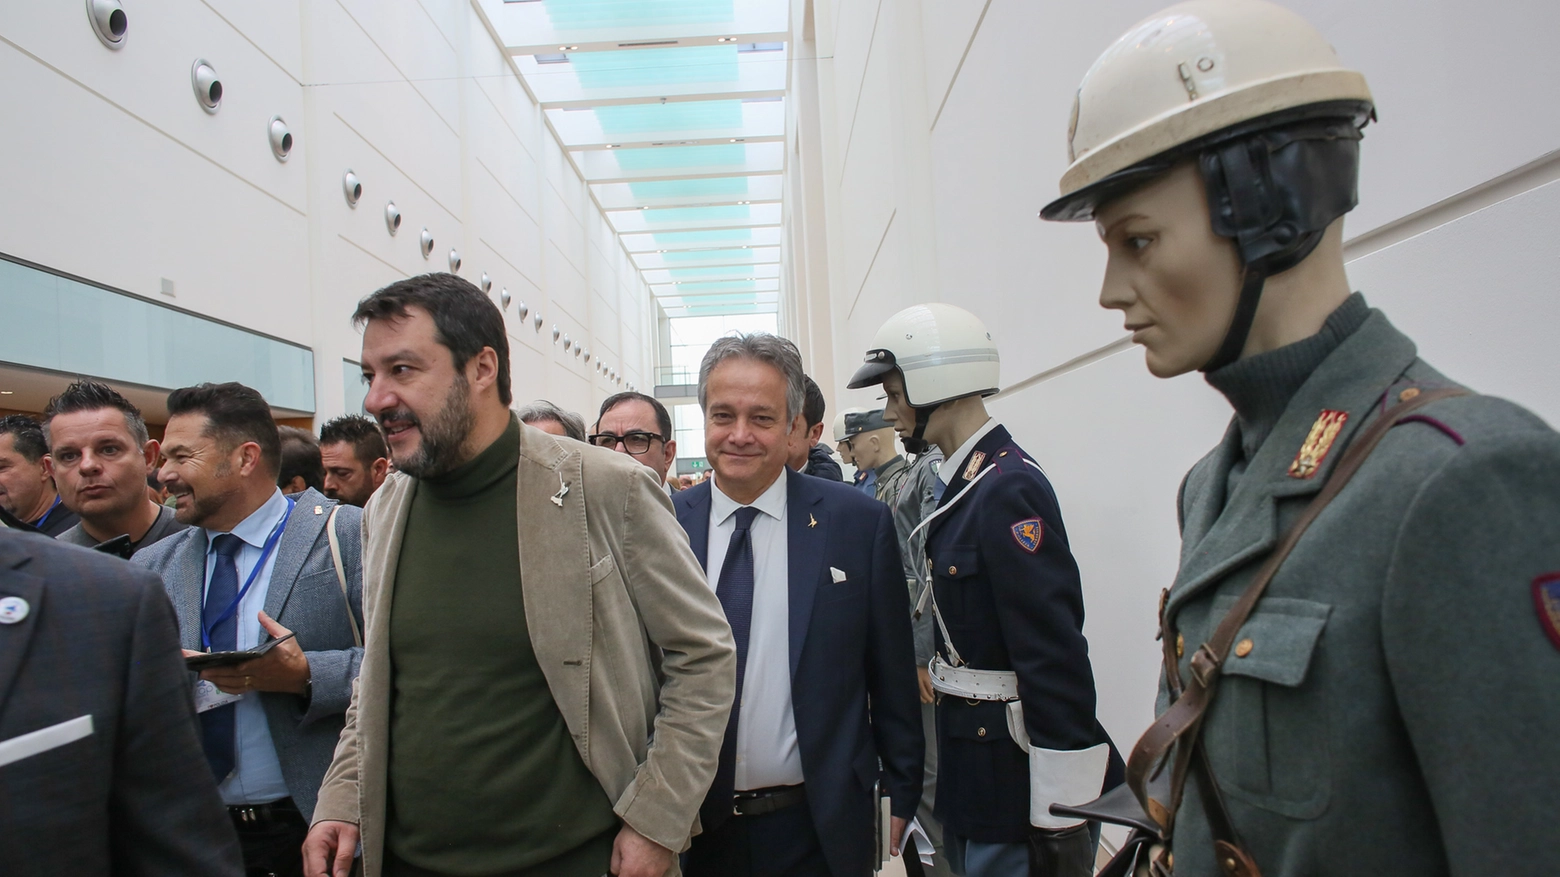 Salvini al Palas per il IX convegno nazionale del Sap (foto Bove)